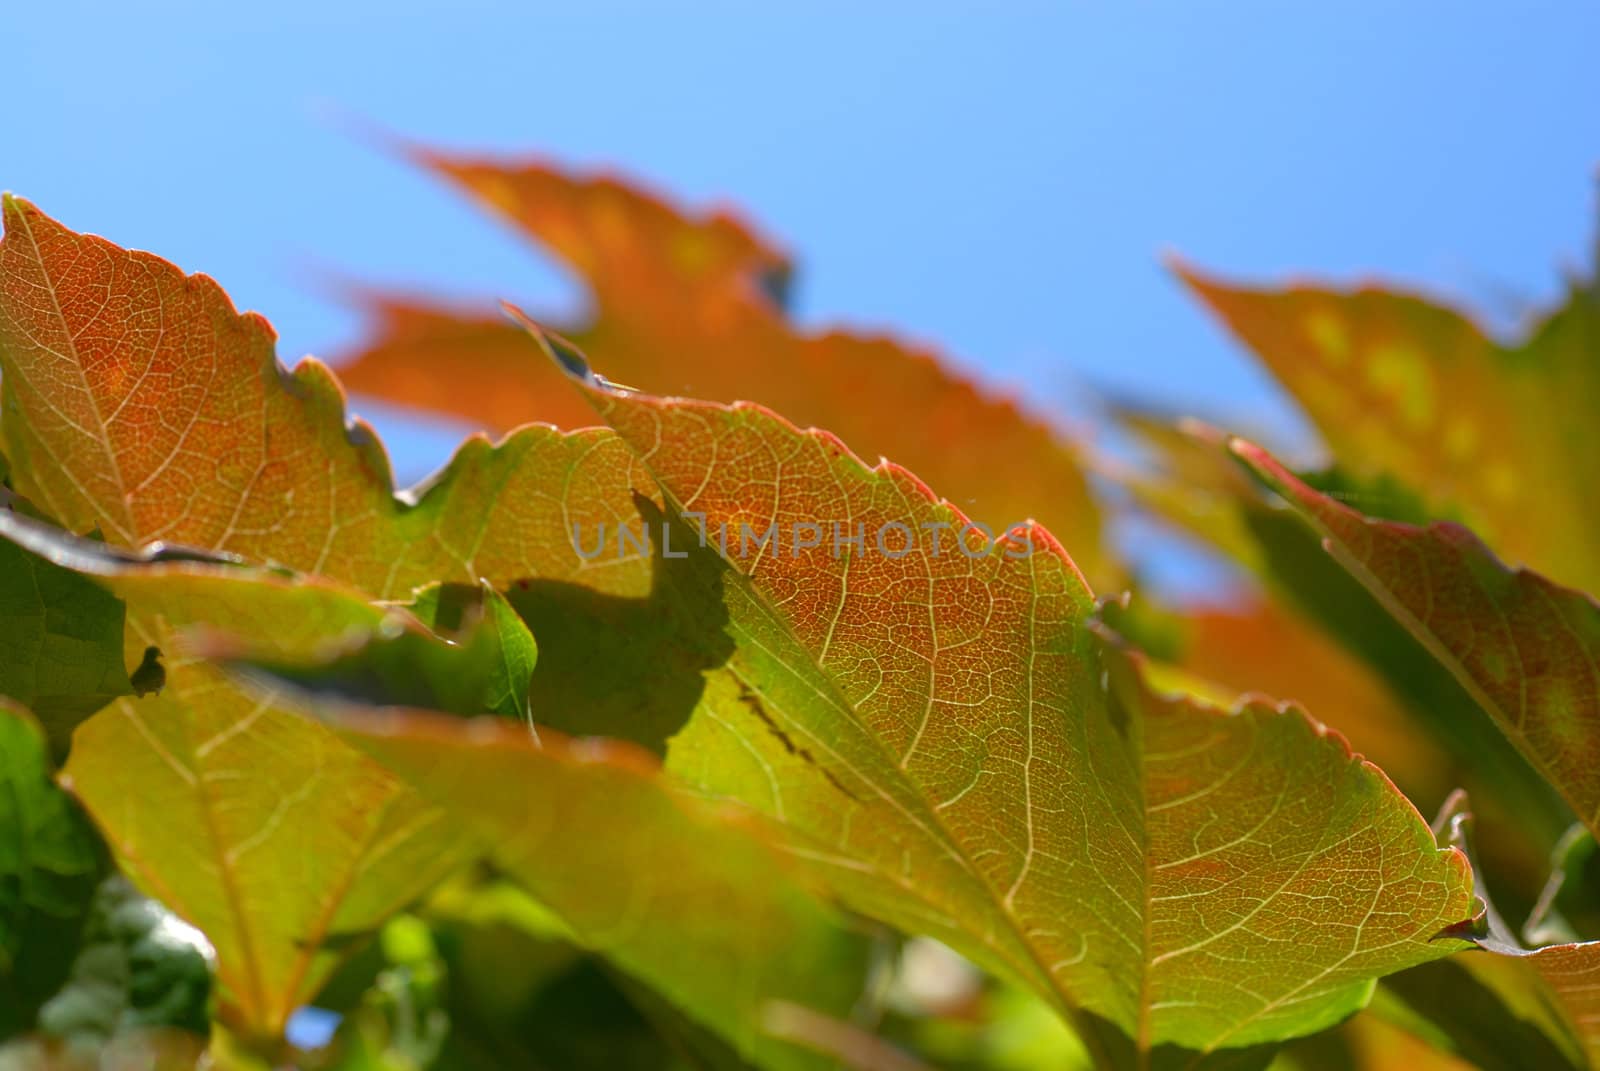 Ivy early autumn. by wojciechkozlowski